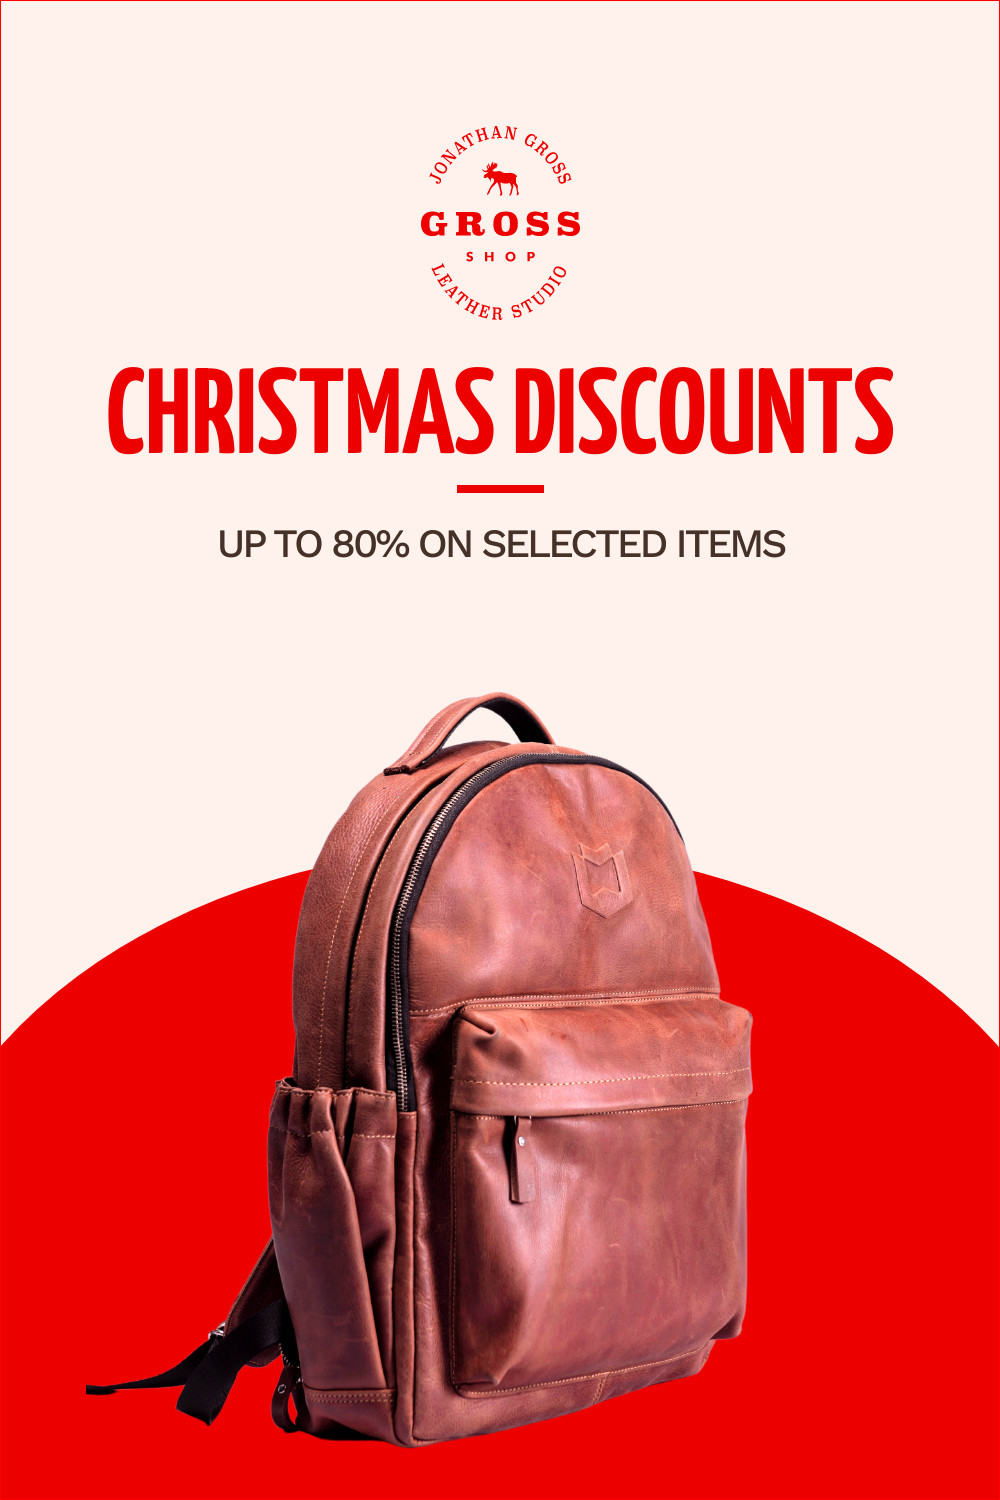 Fashion Bag Christmas Discounts